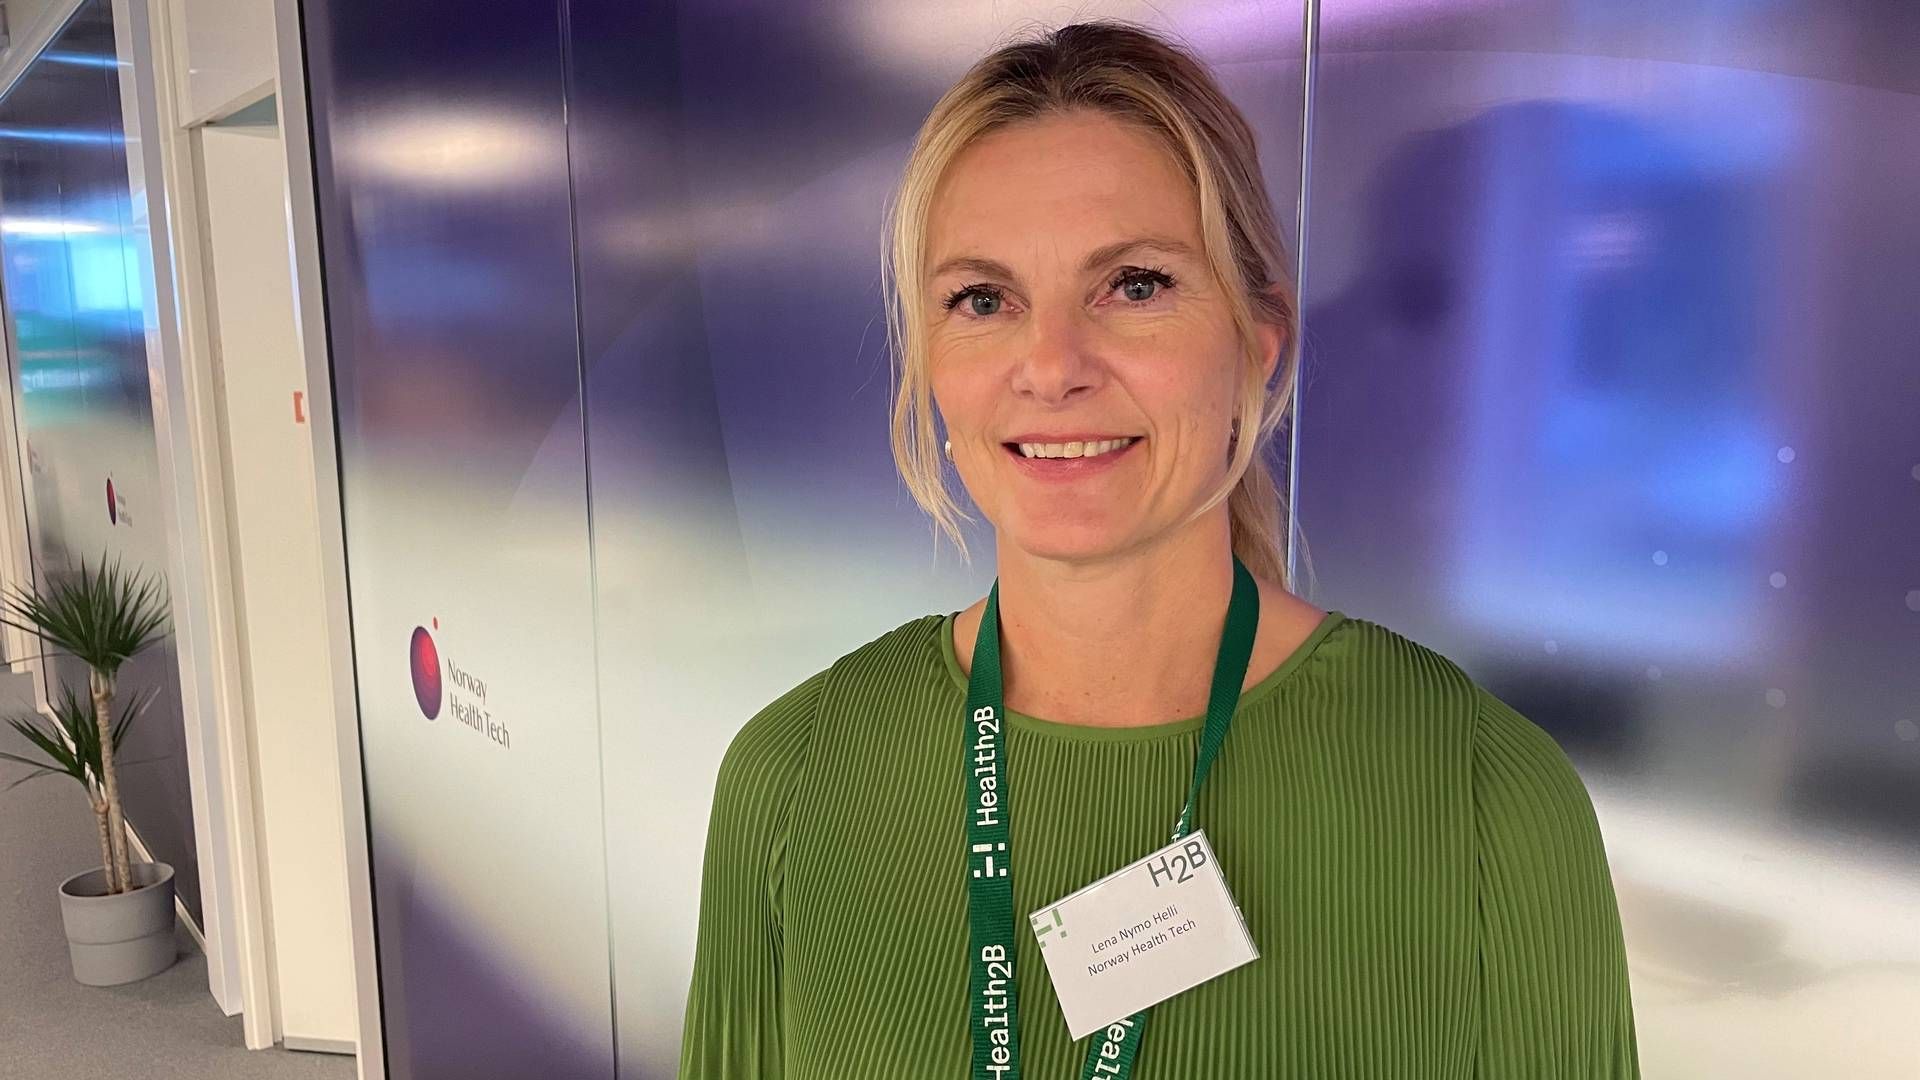 TEKNOLOGISK POTENSIAL: Administrerende direktør Lena Nymo Helli i Norway Health Tech mener kunstig intelligens kan spille en viktig rolle i helsevesenet. – Det ligger stort potensial i teknologien til å forebygge og diagnostisere sykdom mye tidligere og bedre enn i dag, sier hun. | Foto: Anne Grete Storvik